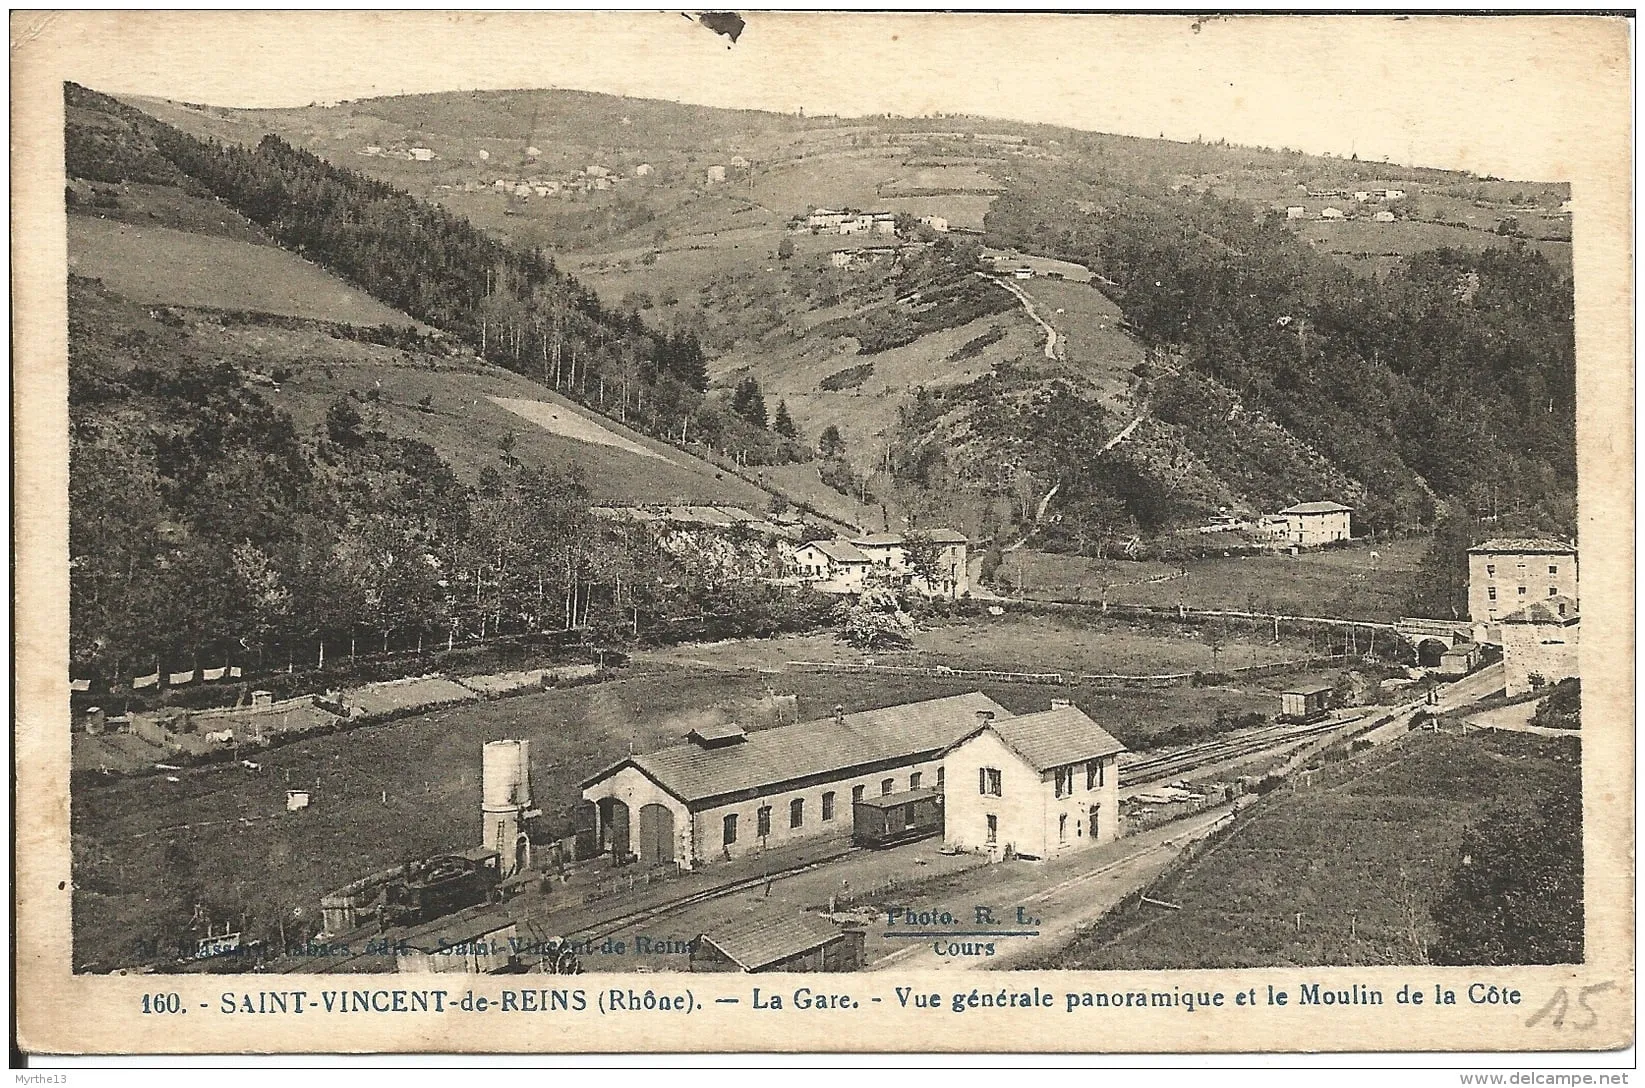 Photo showing: St-Vincent-de-Reins - La Gare - Vue generale panoramique et le Moulin de la Cote